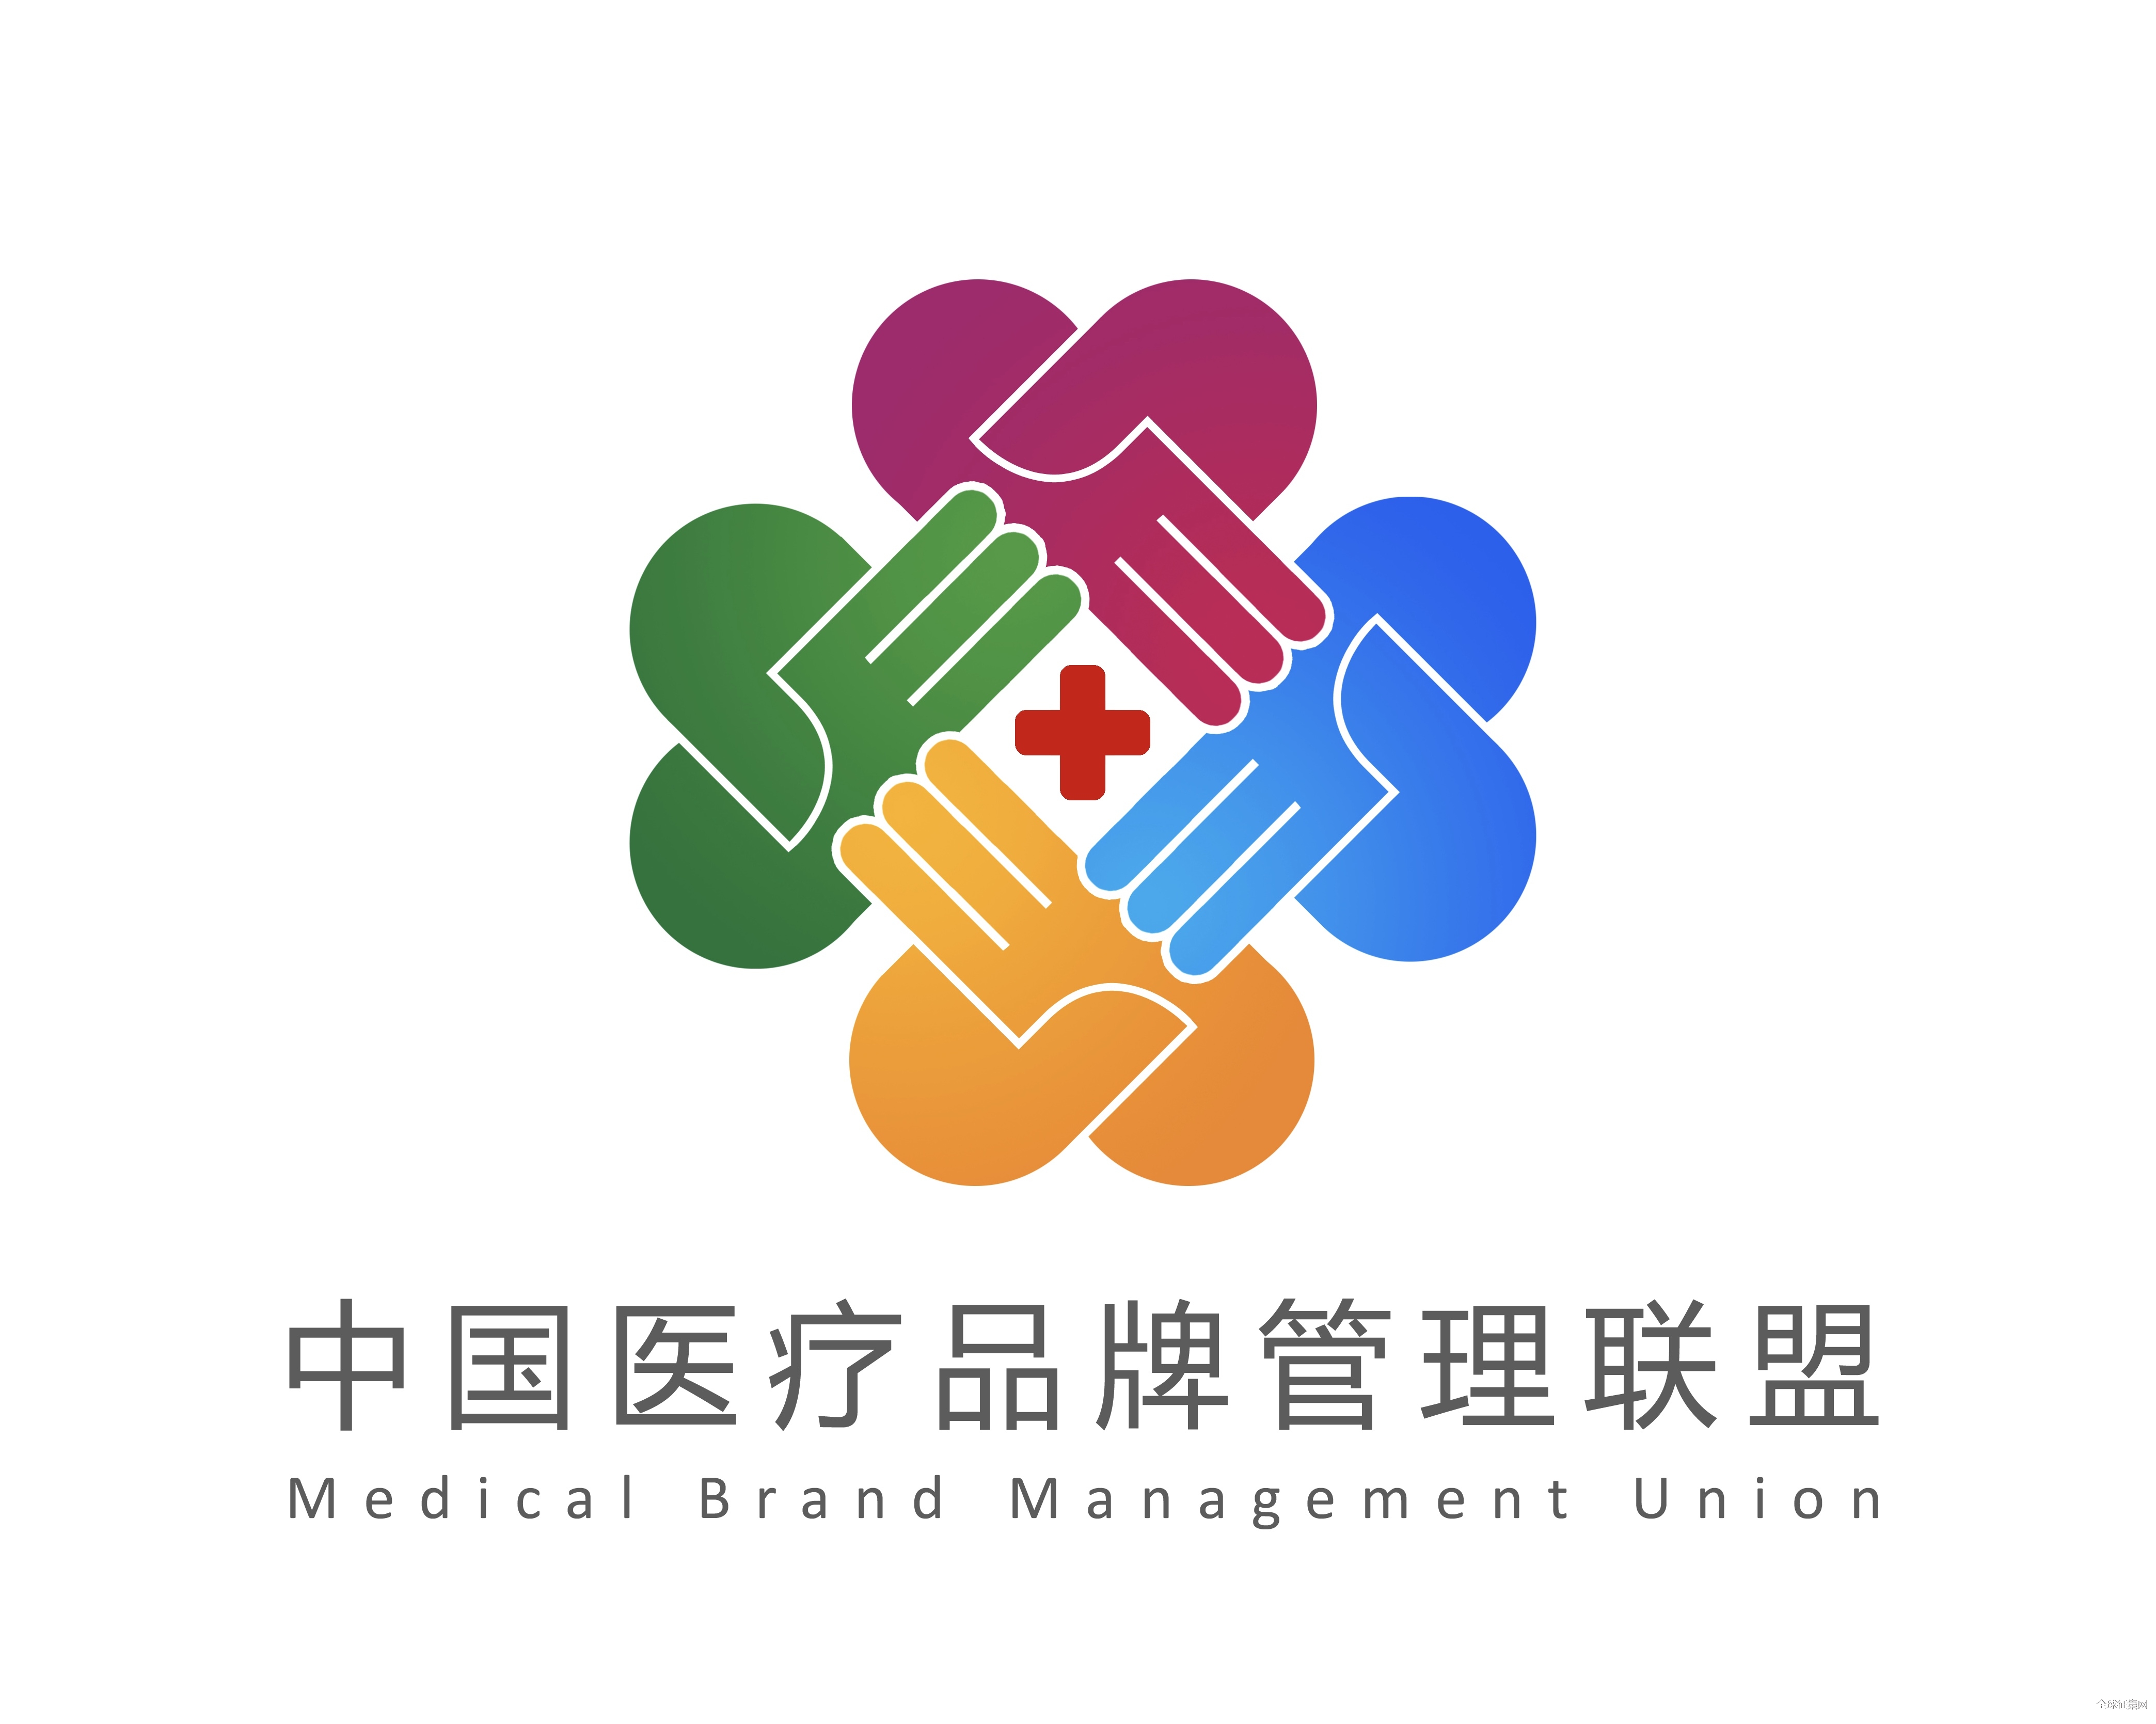 中国医疗品牌管理联盟logo征集大赛投票